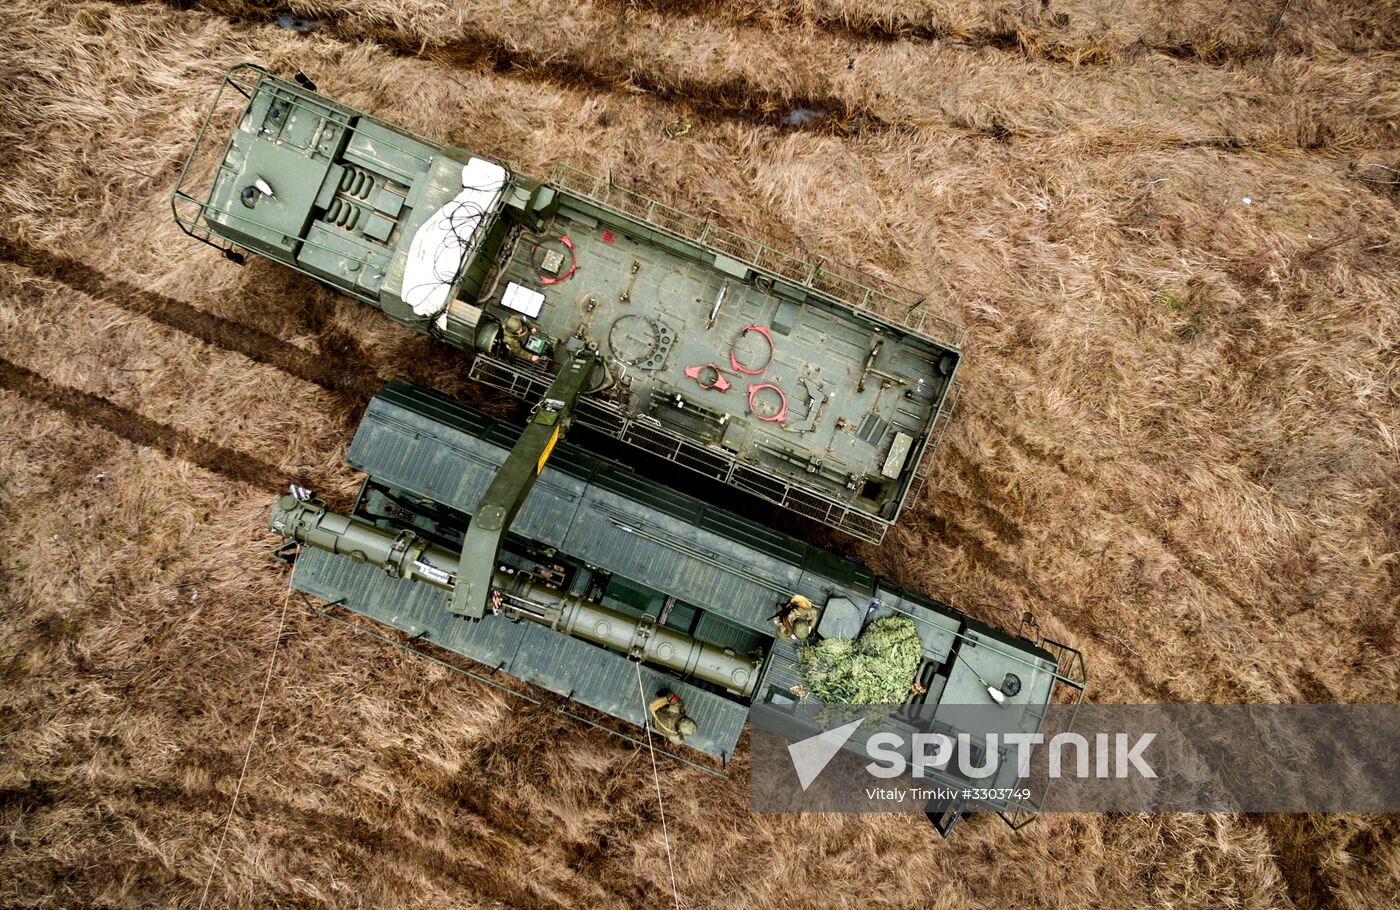 Iskander-M missile launcher crews exercise in Krasnodar Territory